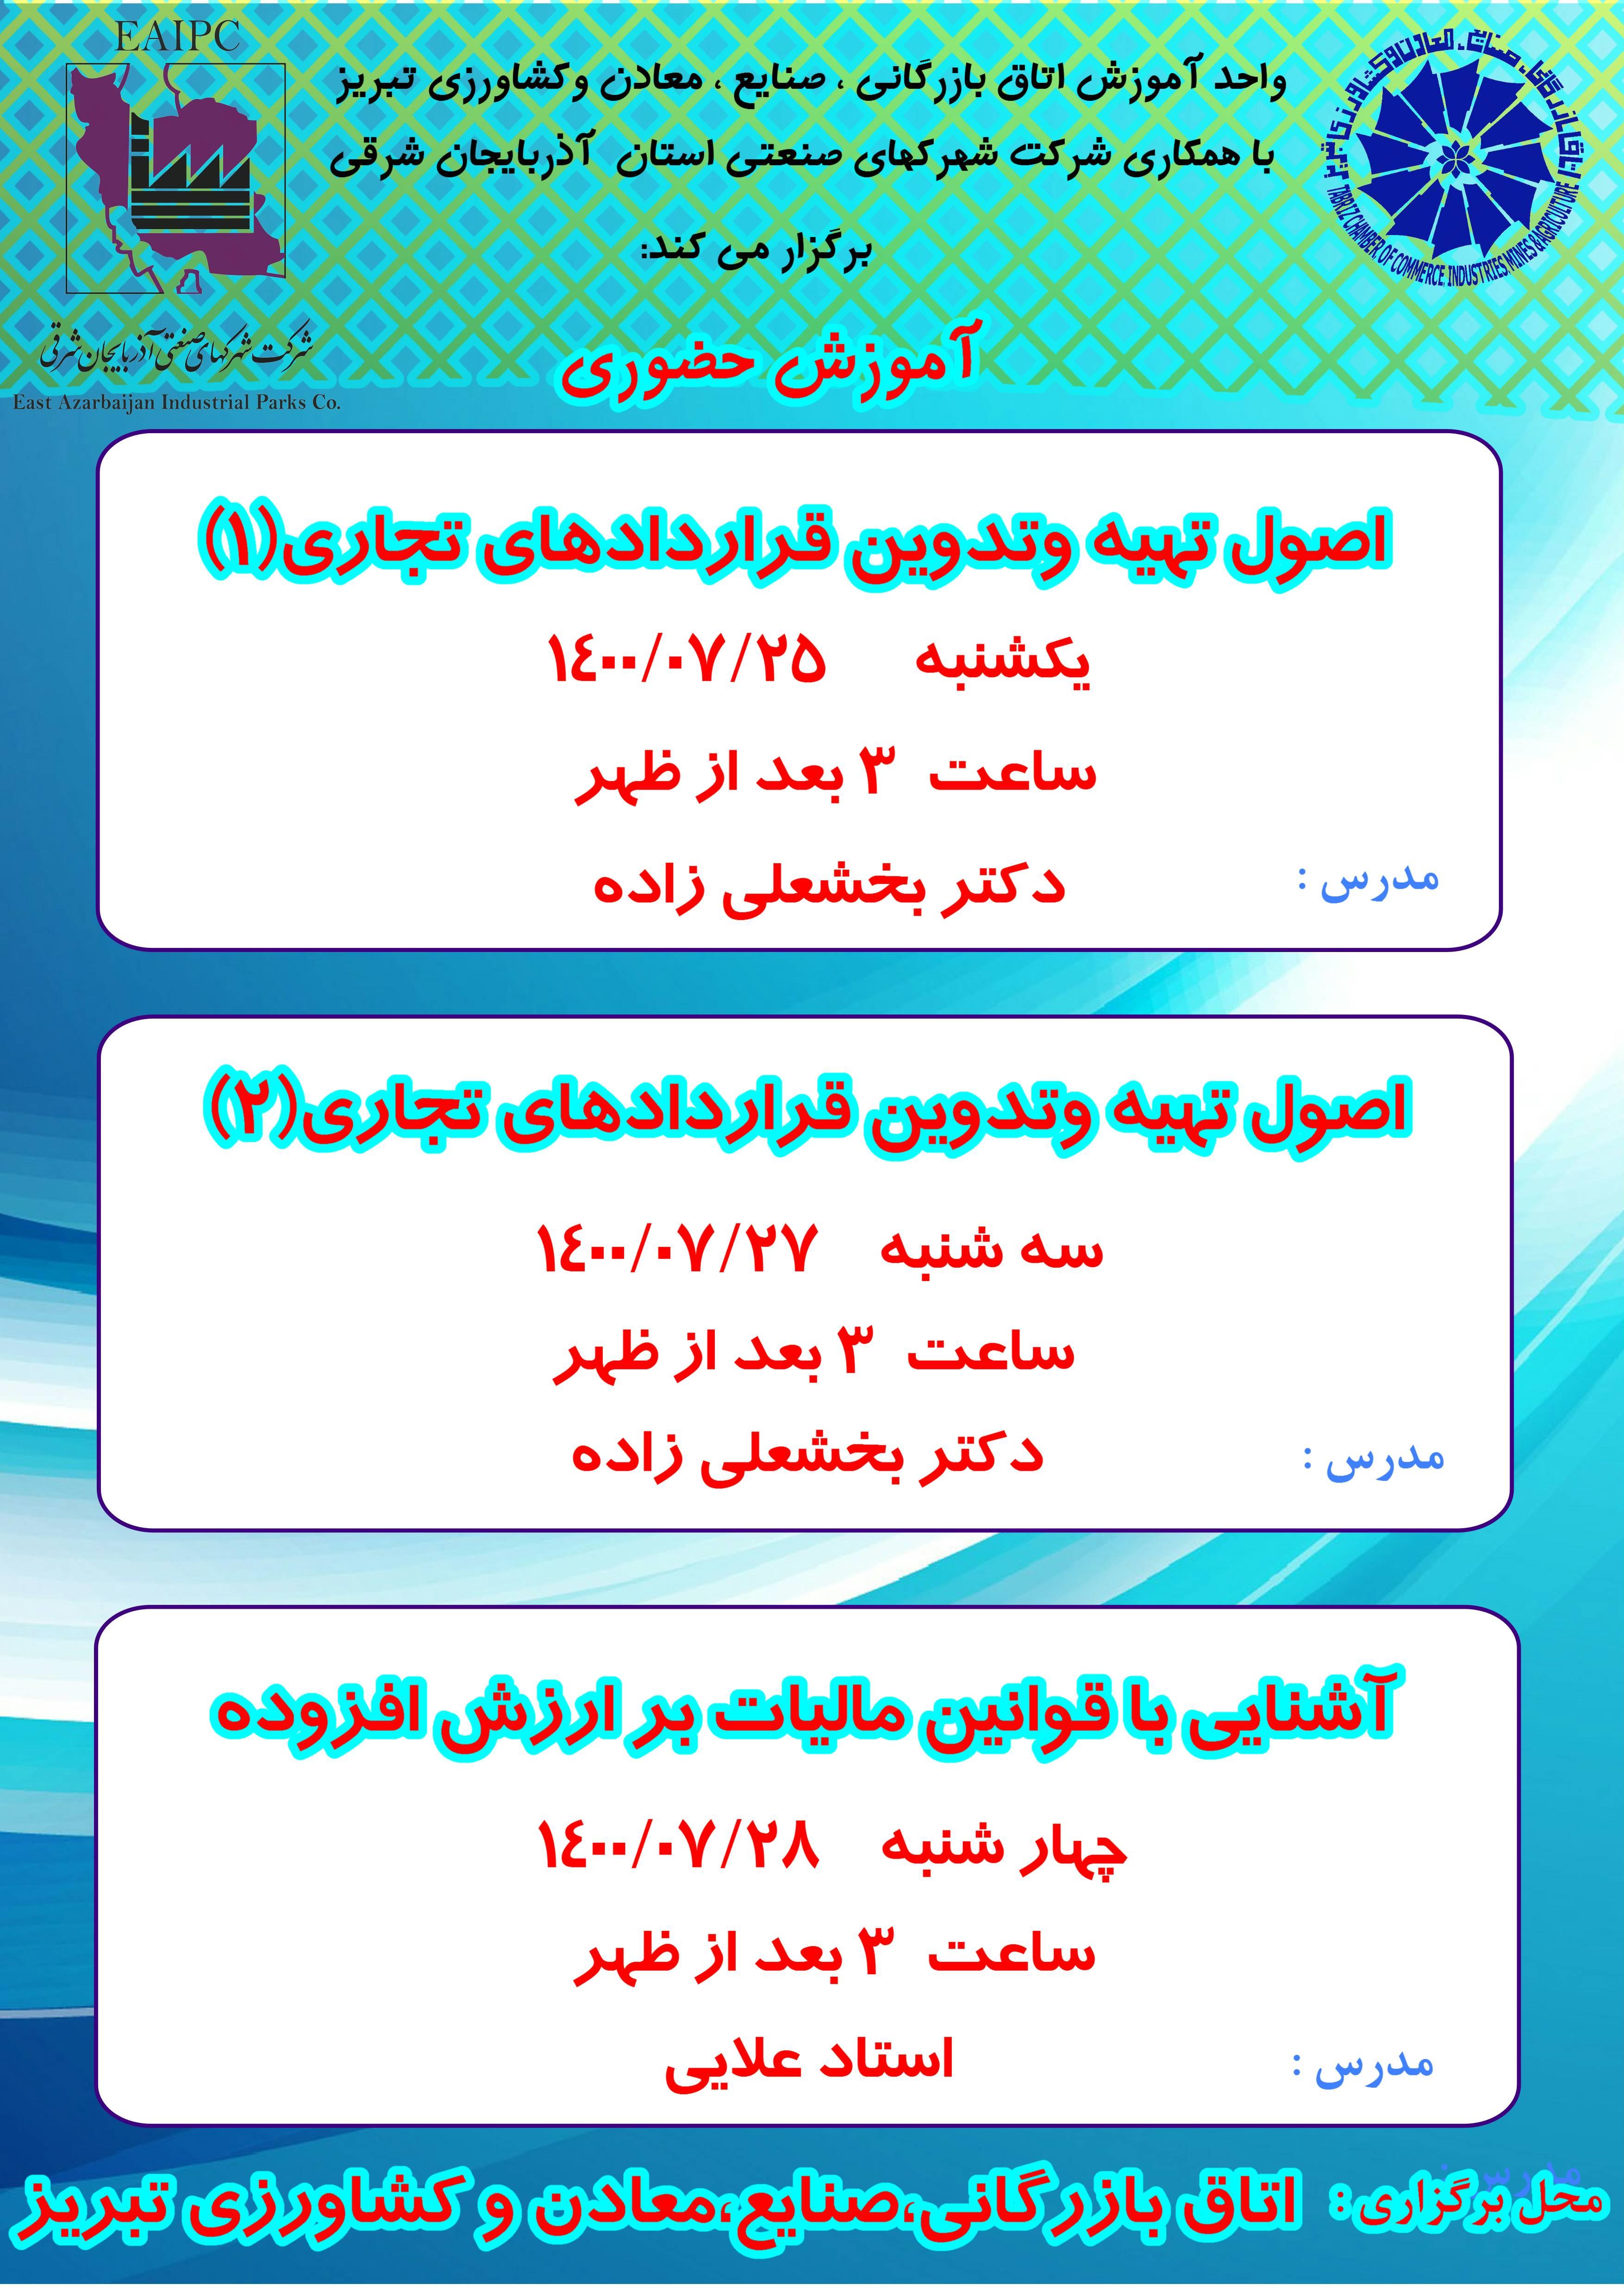 کلاس های آموزش حضوری اتاق بازرگانی، صنایع، معادن و کشاورزی تبریز ( 25 تا 28 مهر 1400)